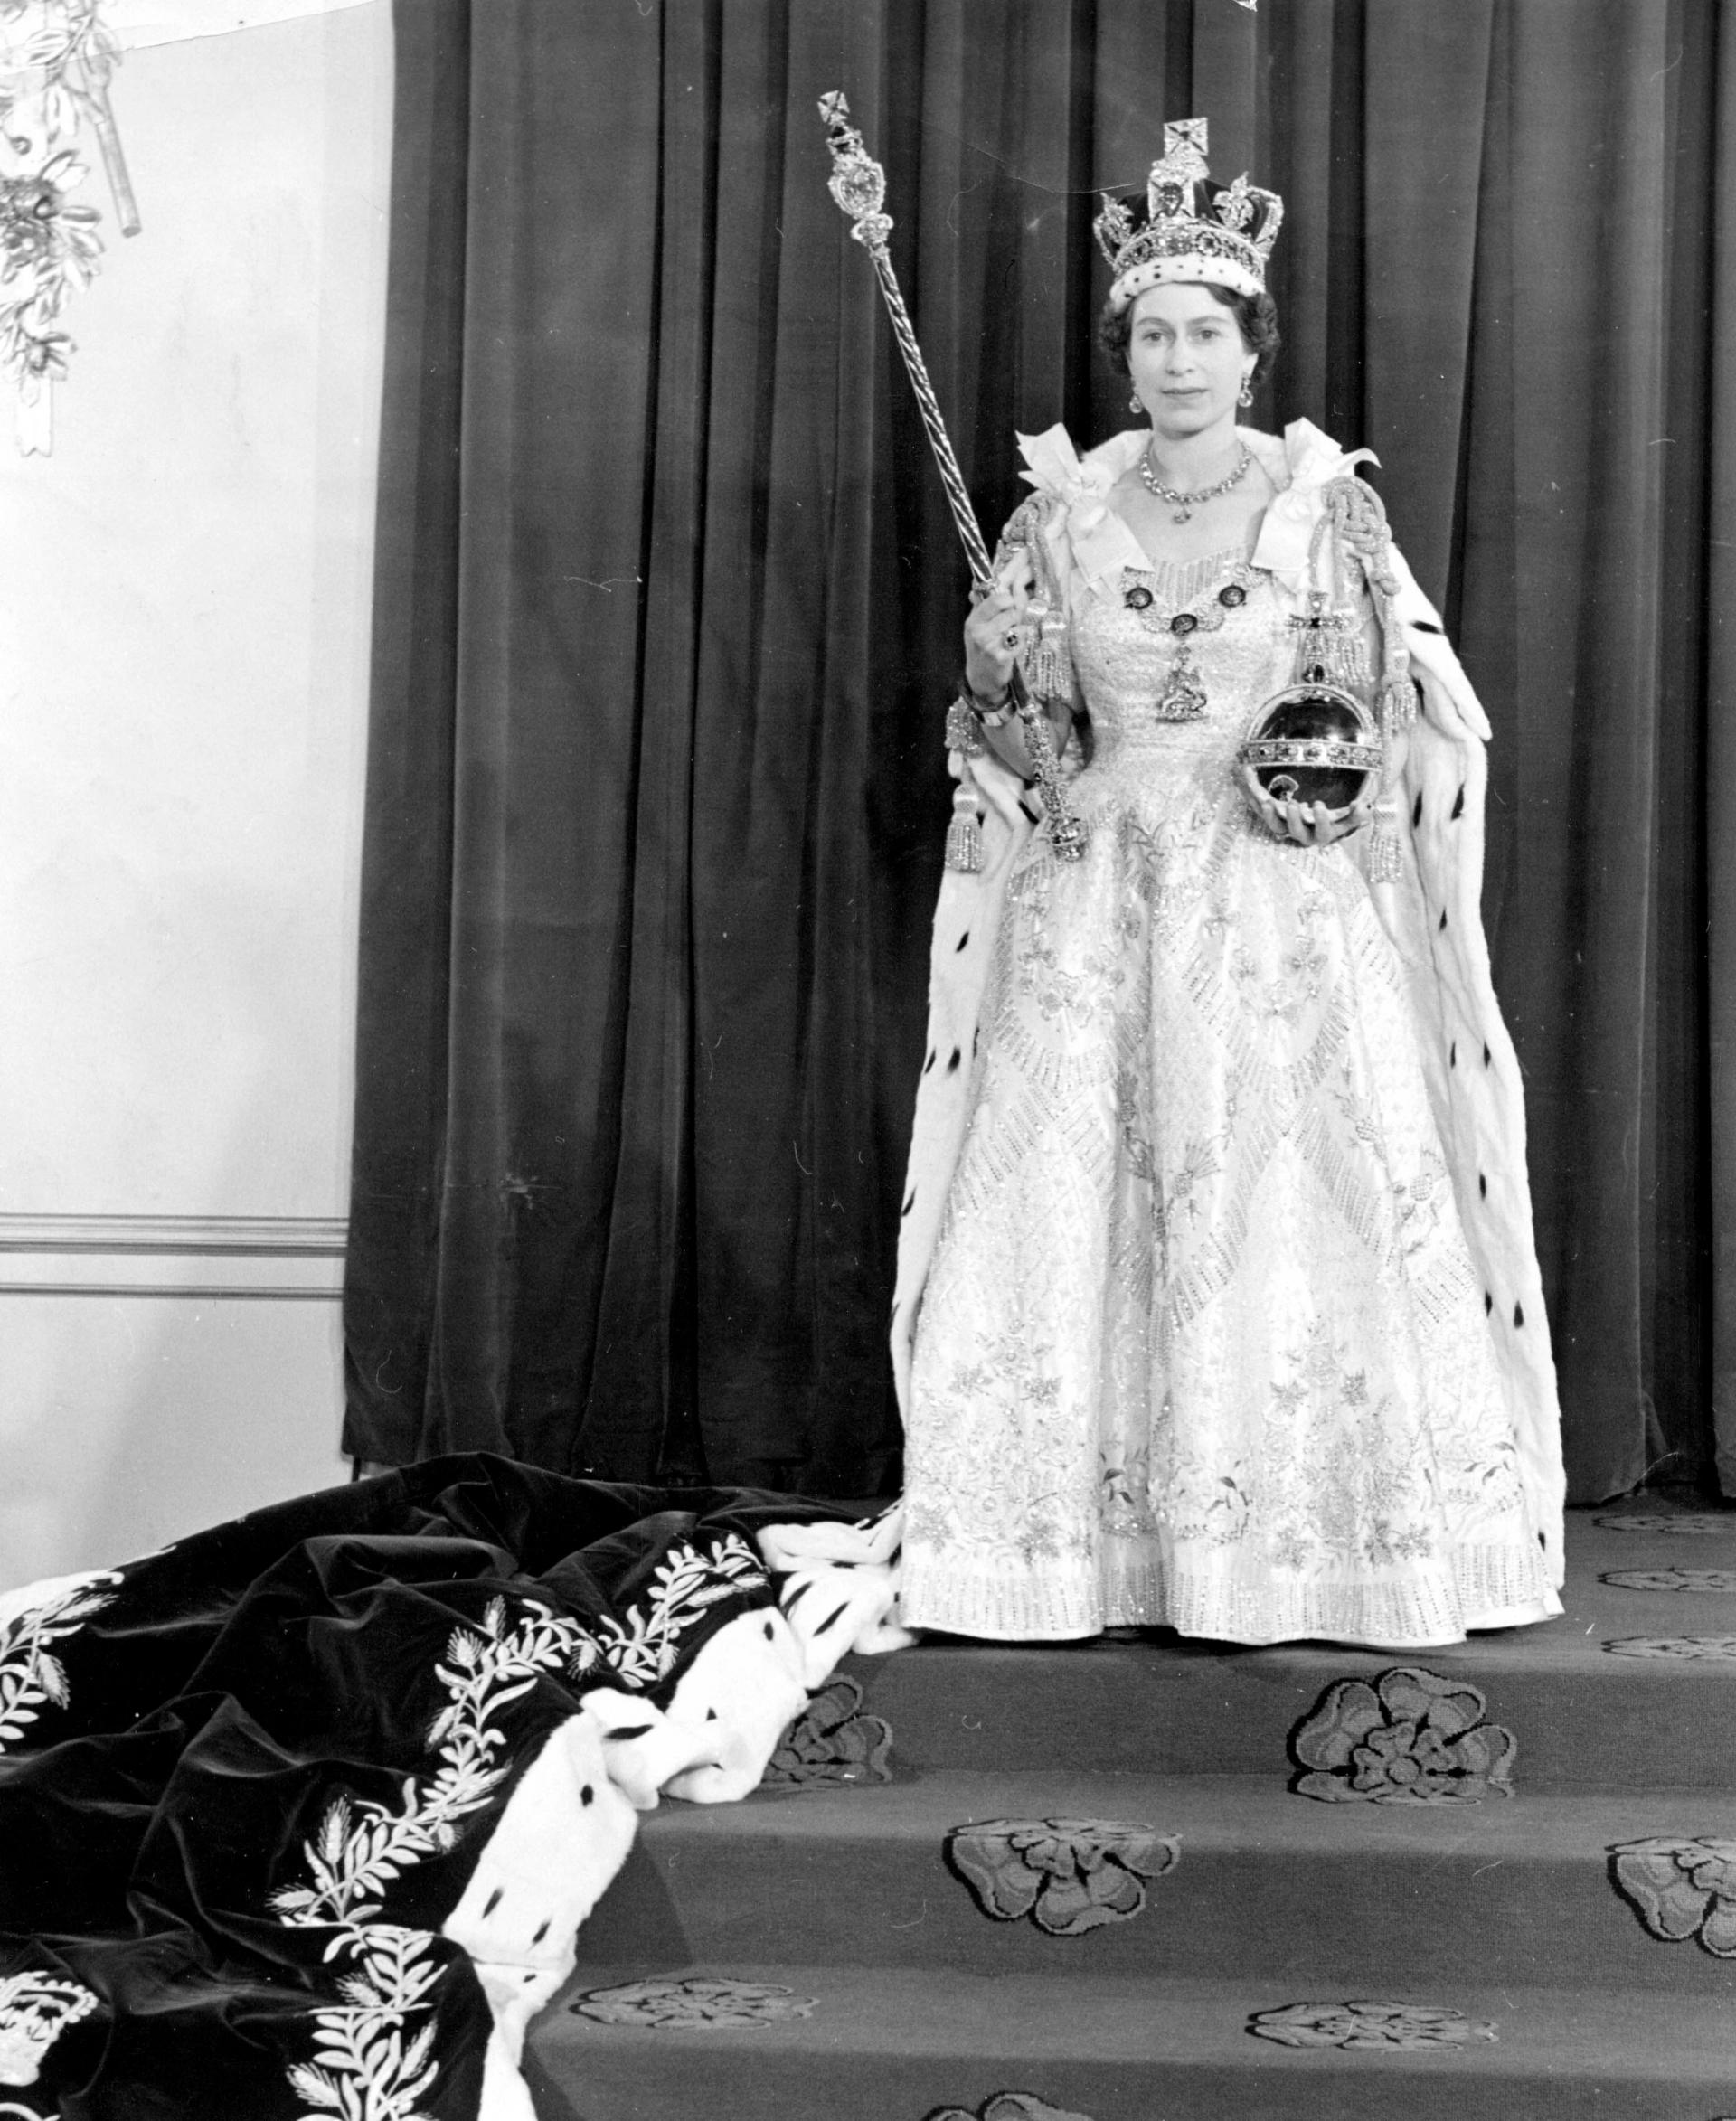 Queen_Elizabeth_II_wearing_her_Coronation_robes_and_regalia 2 June 1953